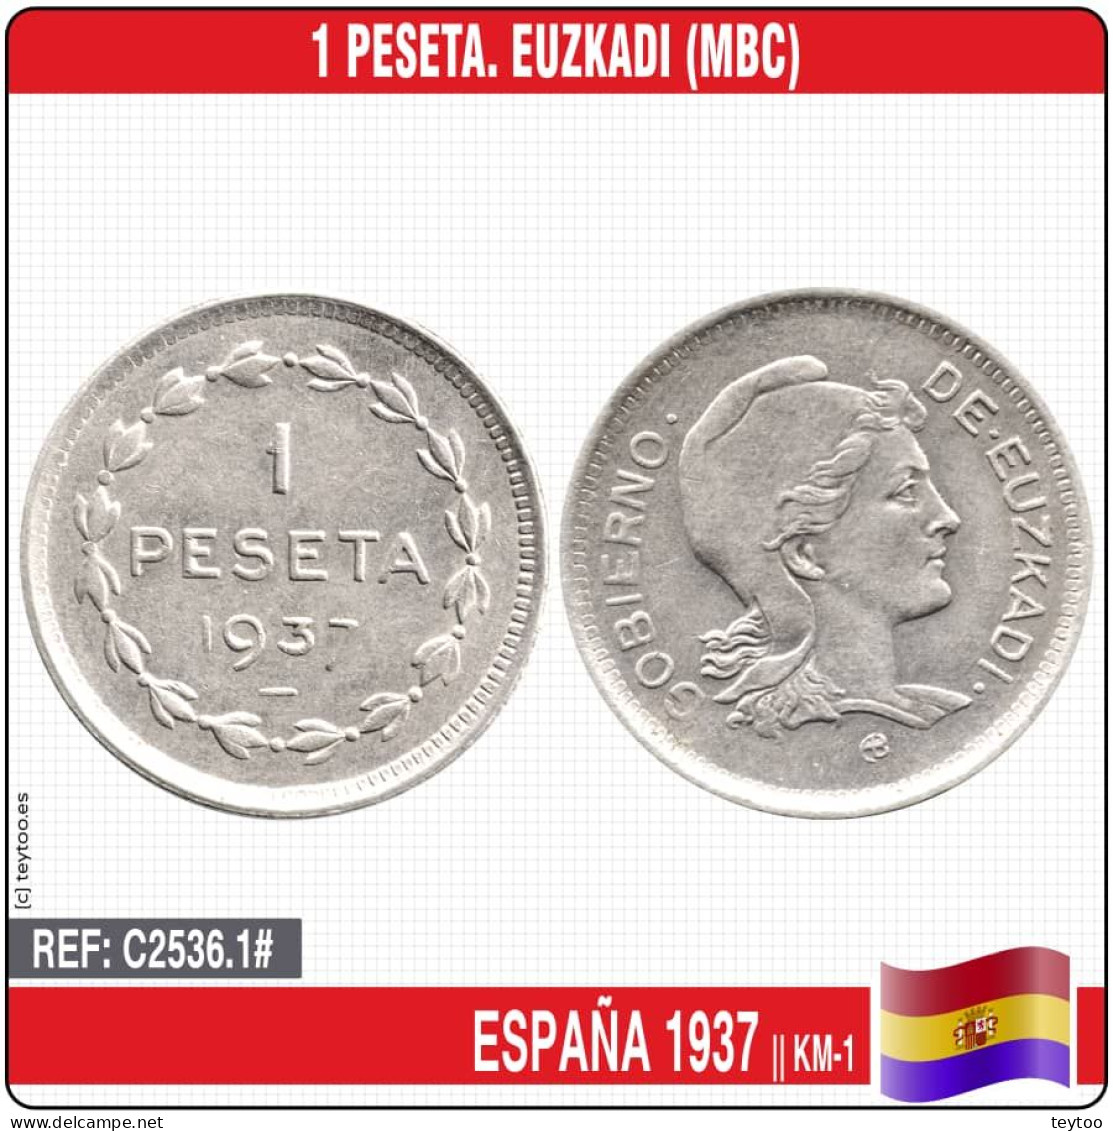 C2536.1# España 1937. 1 Peseta. Euzkadi (MBC) KM-1 - Republikeinse Zone